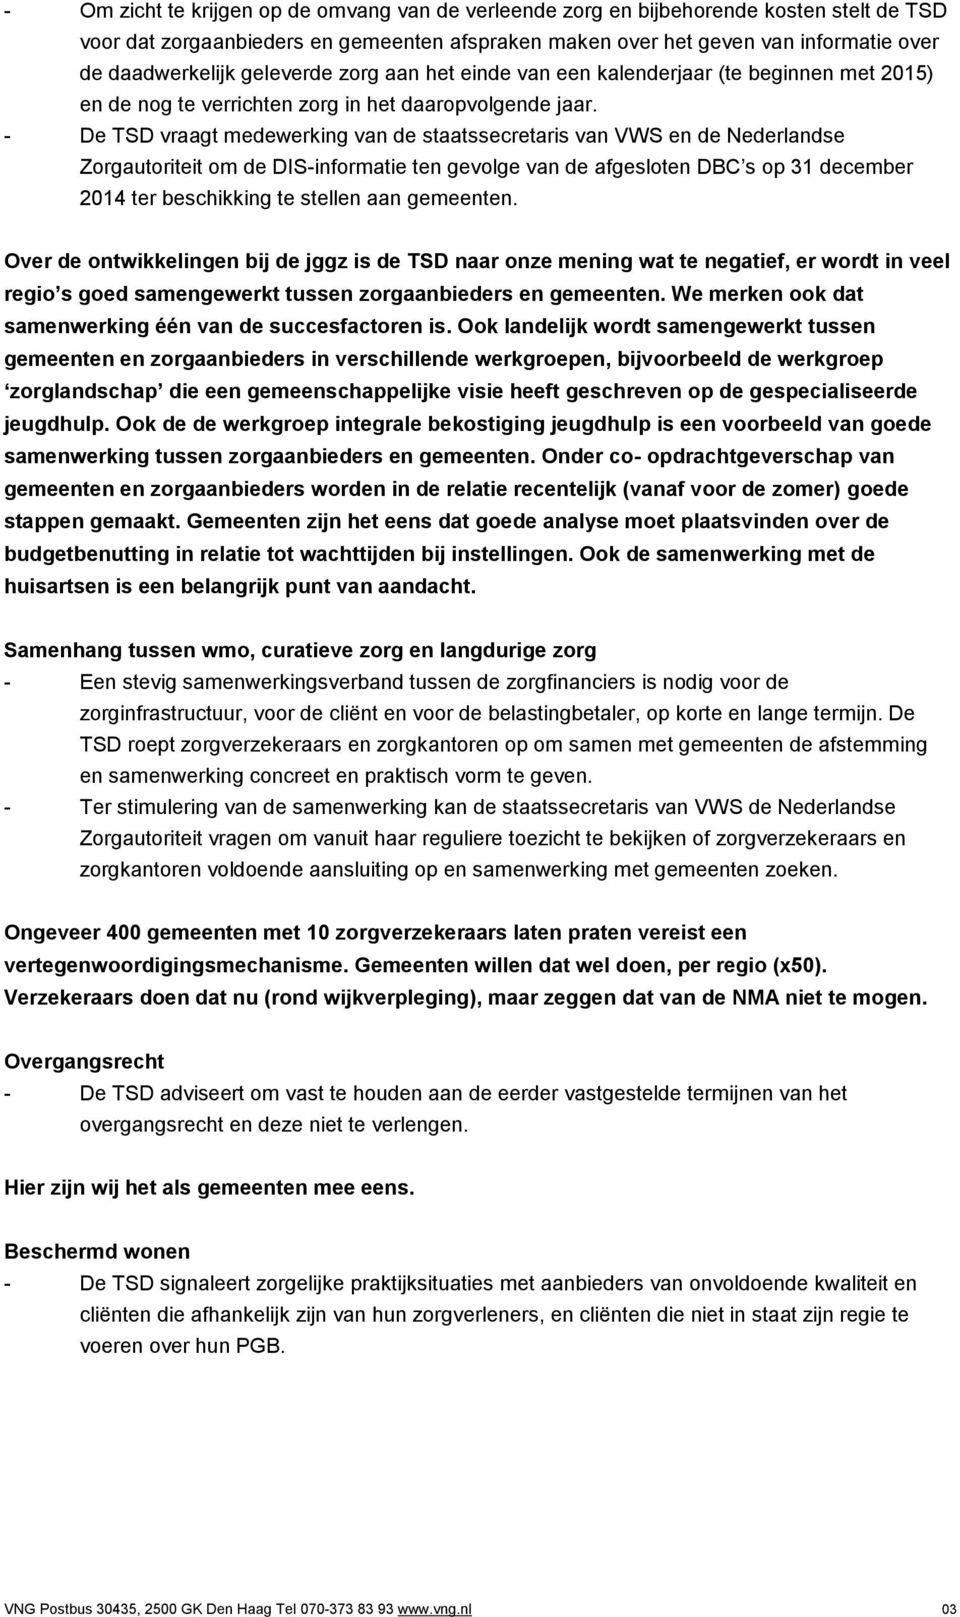 - De TSD vraagt medewerking van de staatssecretaris van VWS en de Nederlandse Zorgautoriteit om de DIS-informatie ten gevolge van de afgesloten DBC s op 31 december 2014 ter beschikking te stellen